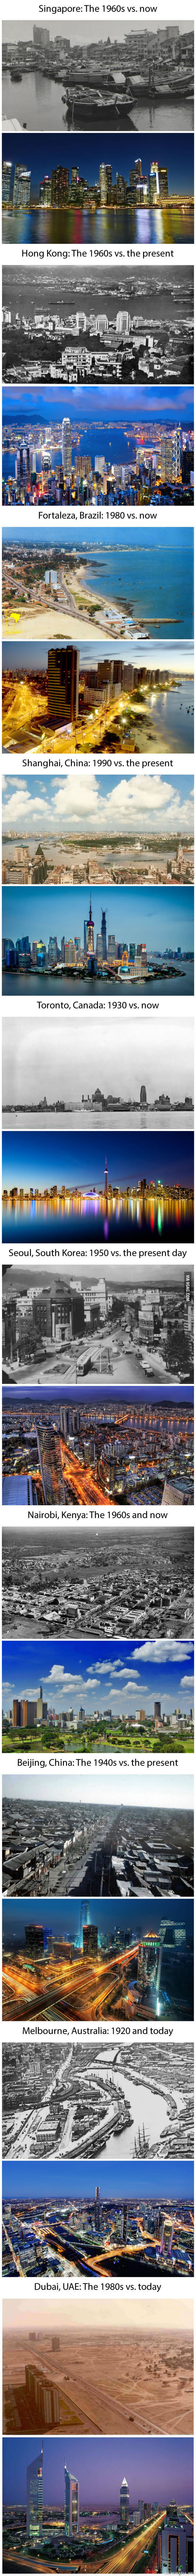 Kaupungit ennen ja nyt